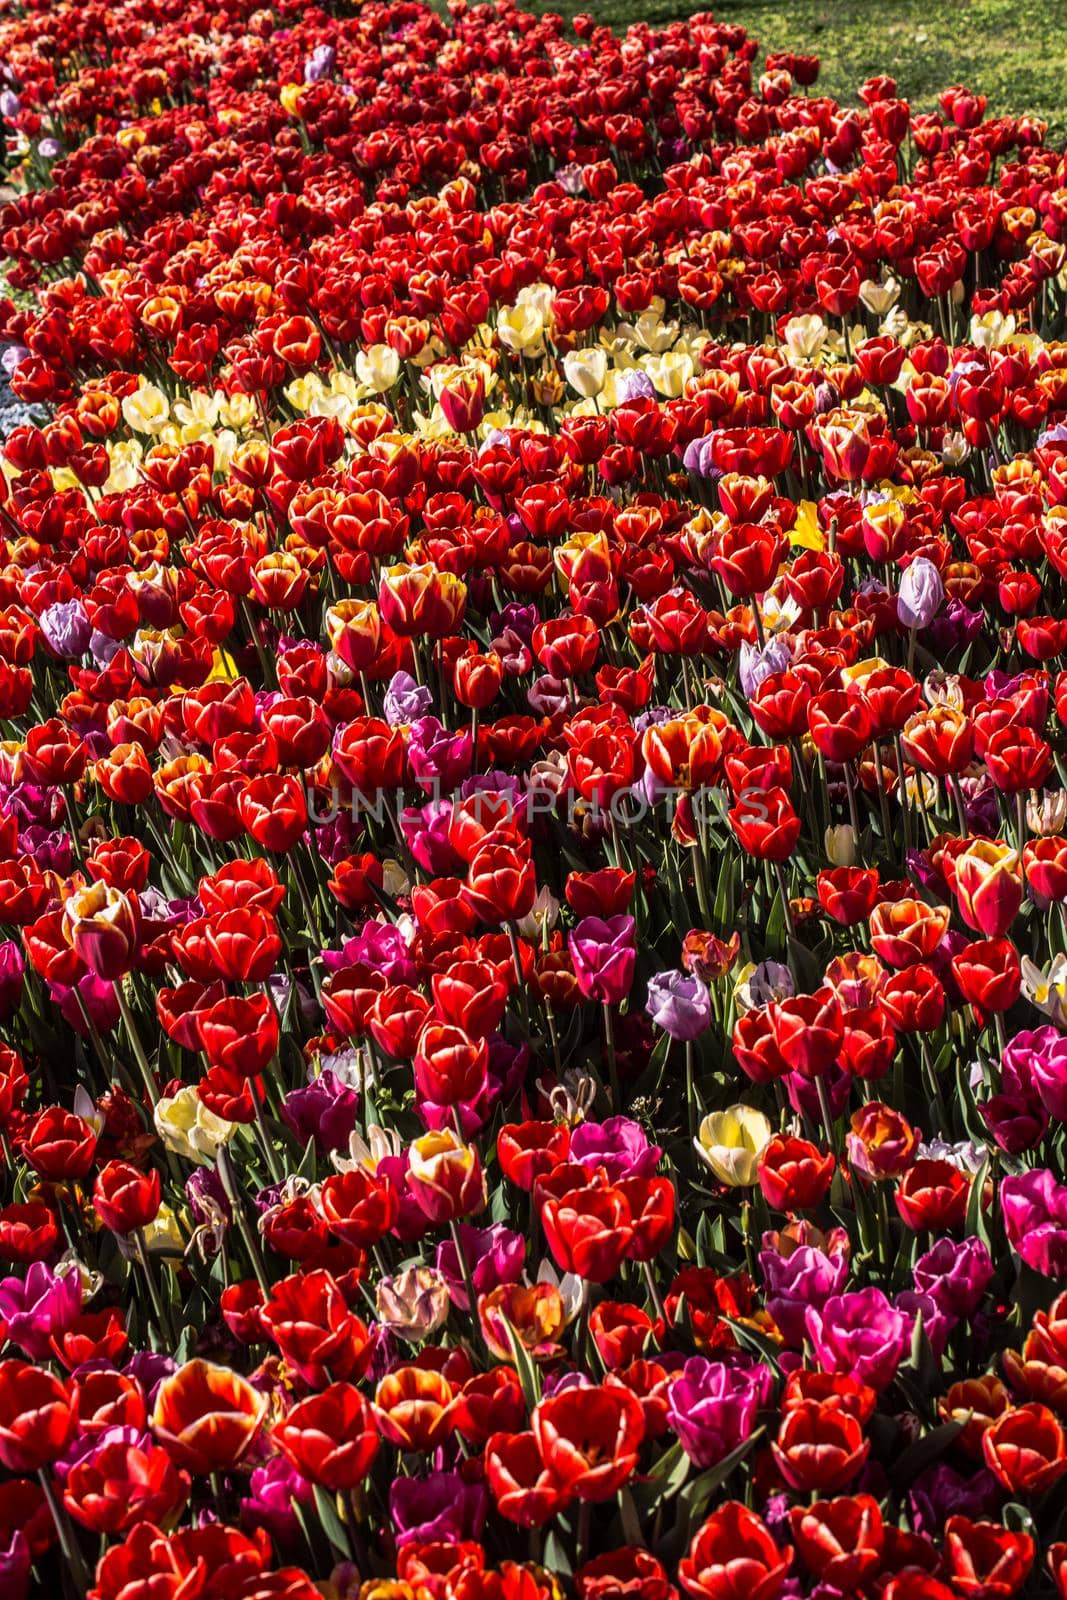 Blooming tulip flowers in spring as  floral background by berkay